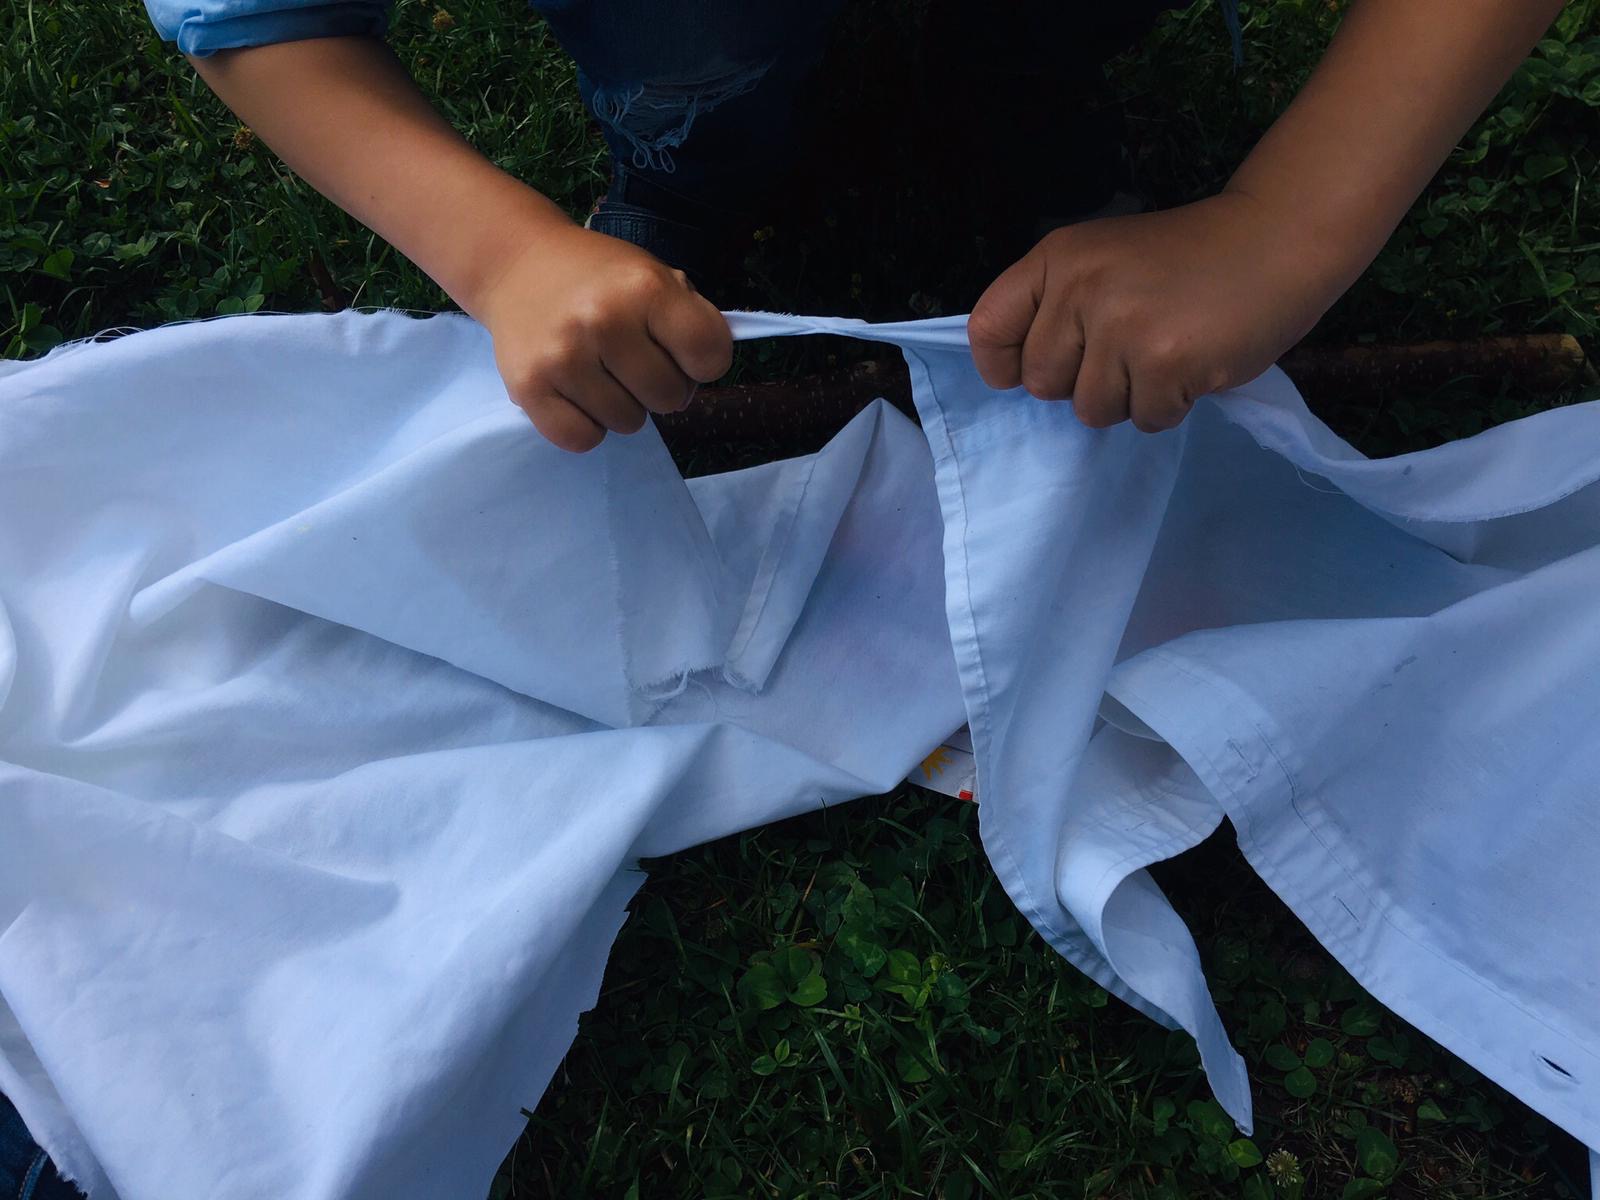 Bild zum Schritt 2 für das Bastel- und DIY-Abenteuer für Kinder: 'Die Kinder schneiden oder reißen sich ein Stück vom Hemd...'